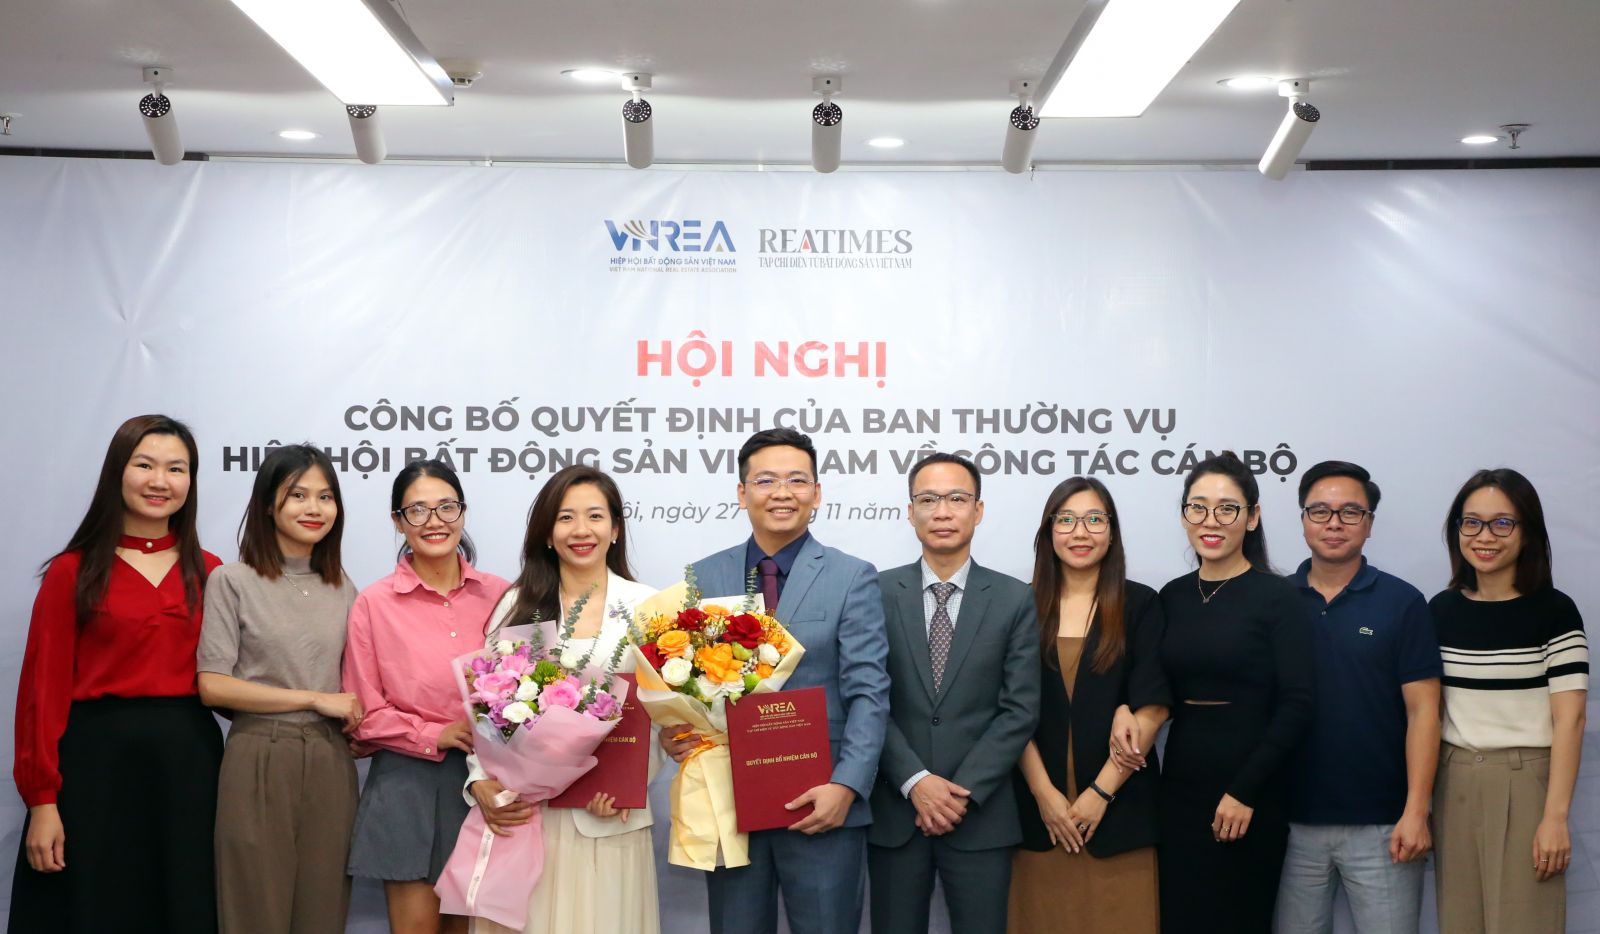 Nhà báo Nguyễn Thành Công giữ chức Phó Tổng Biên tập Tạp chí điện tử Bất động sản Việt Nam (Reatimes)